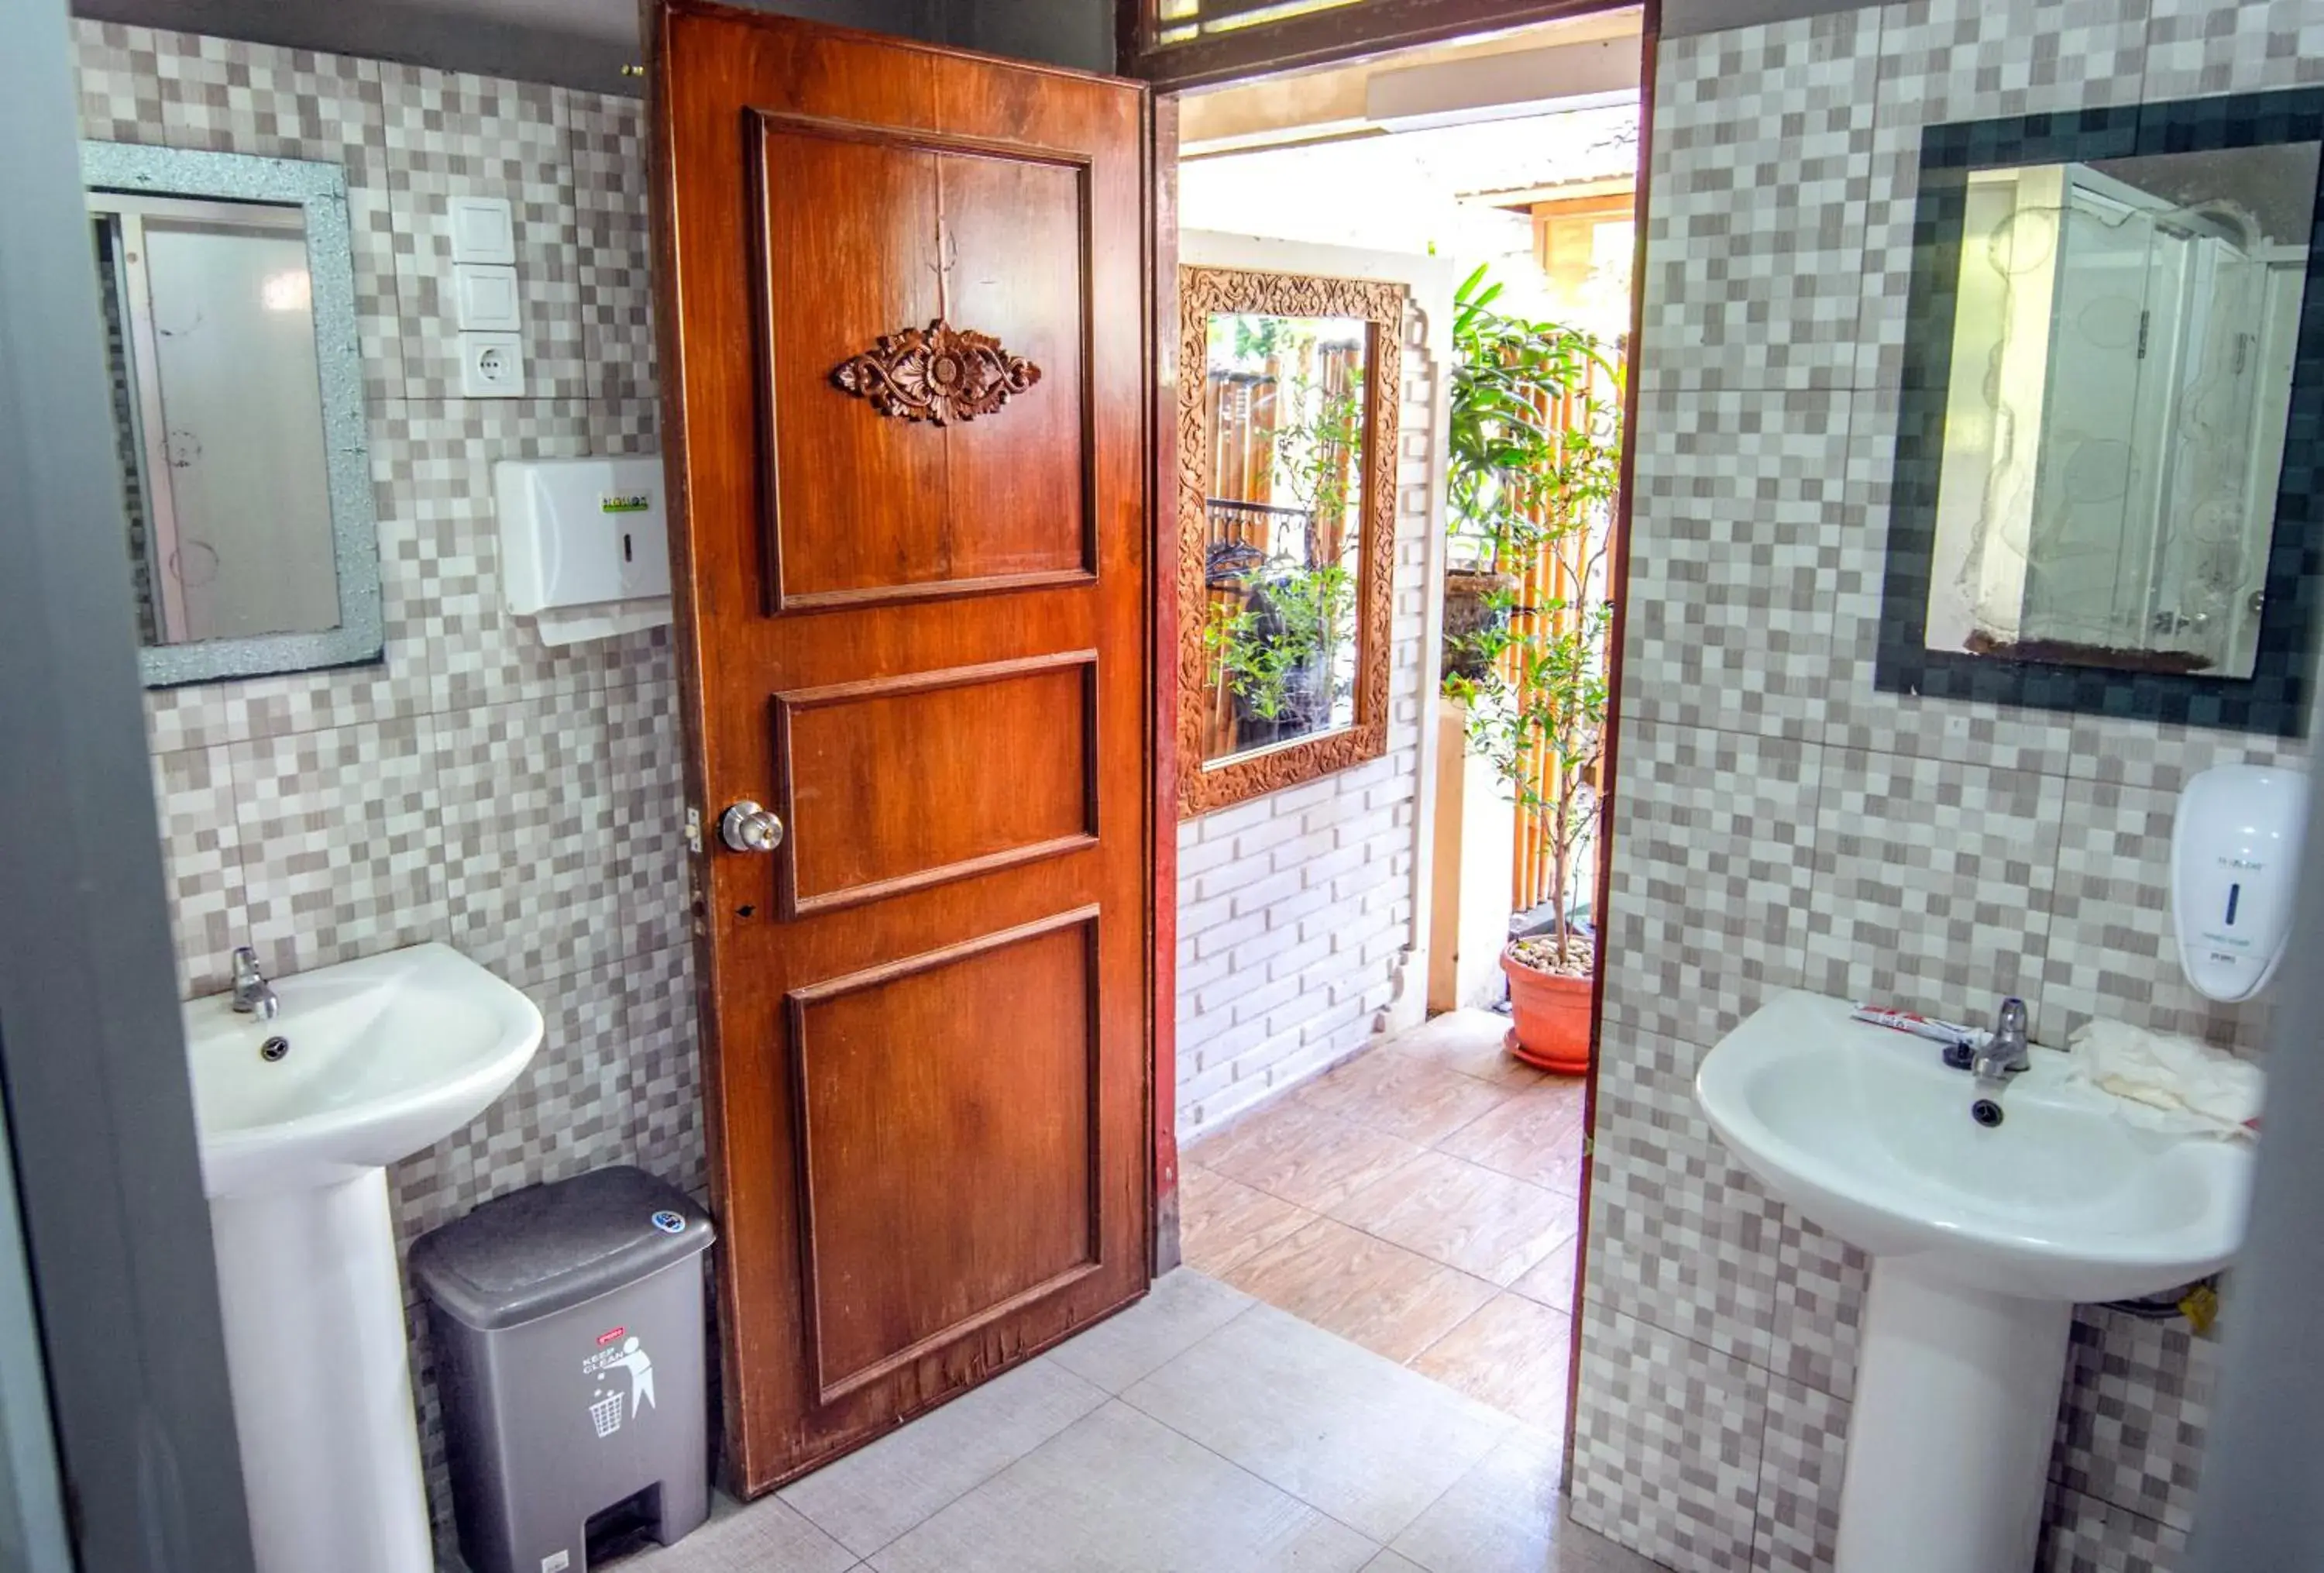 Bedroom, Bathroom in Restu Bali Hotel